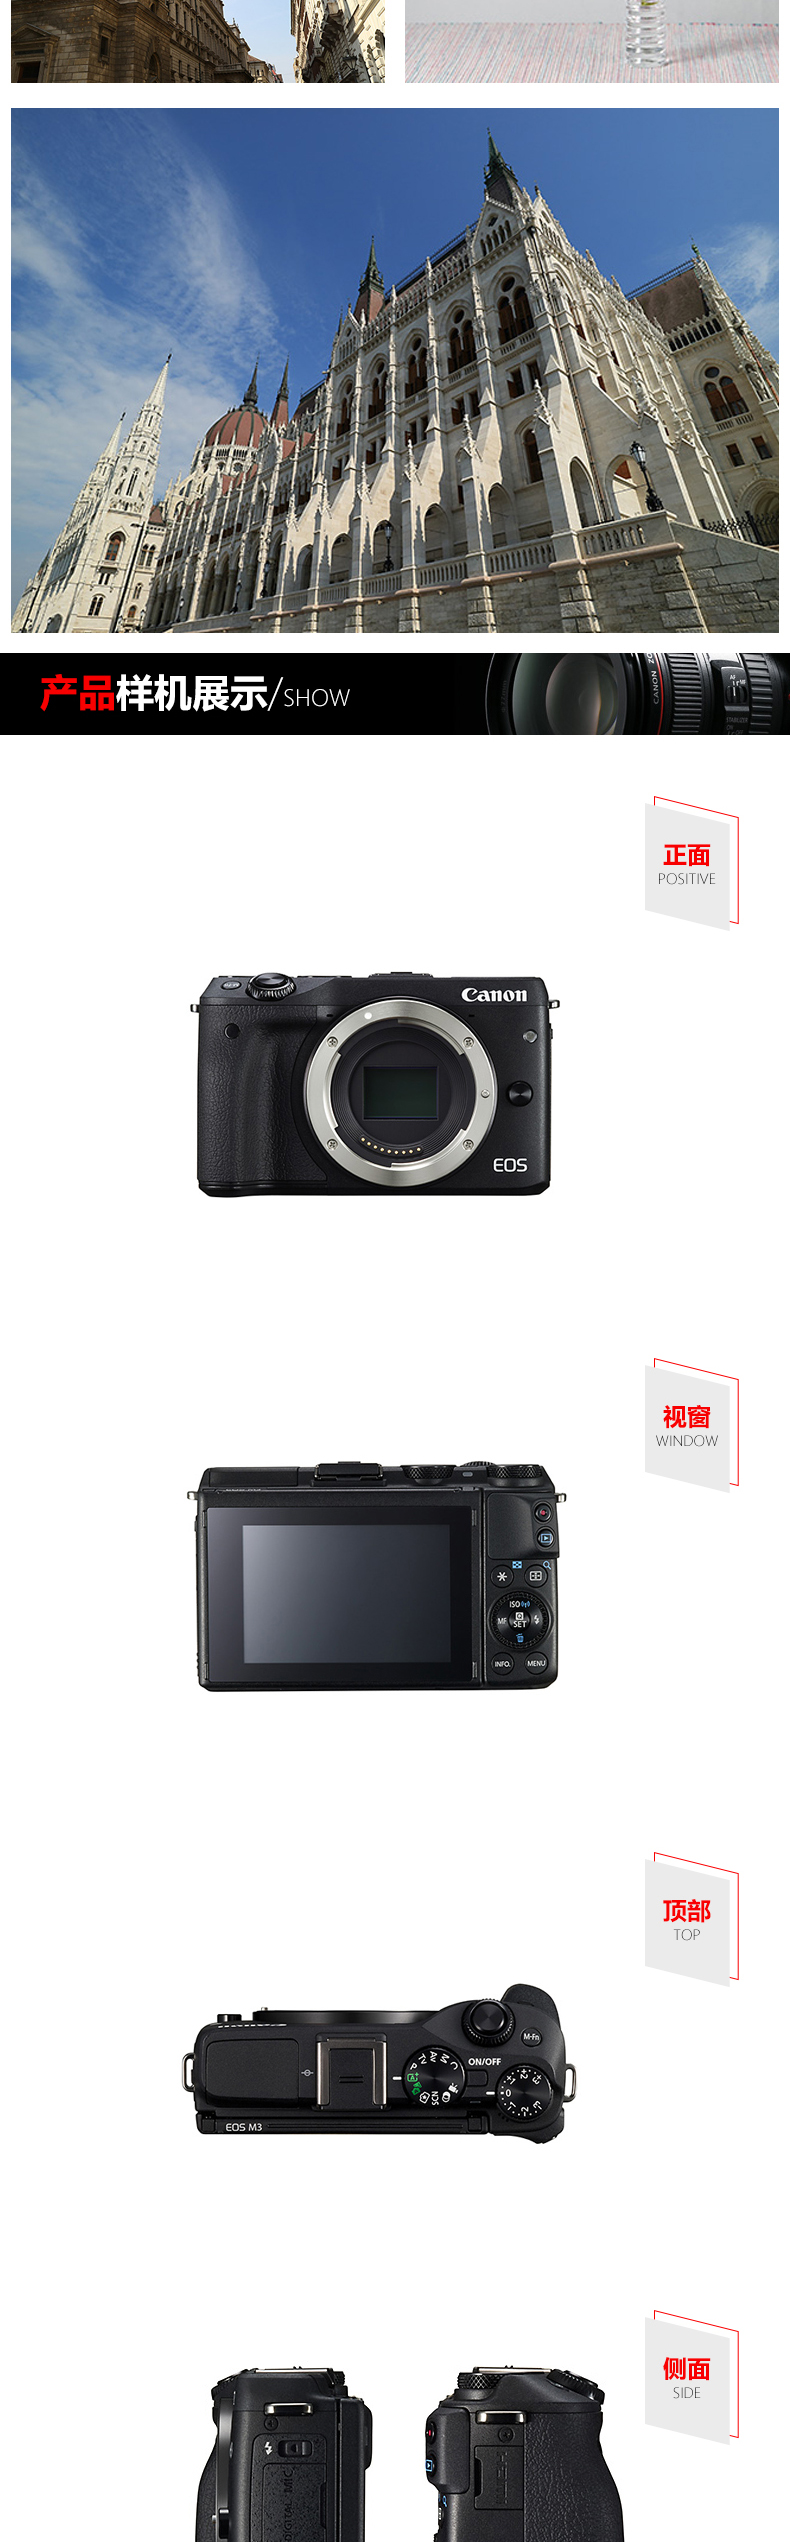 佳能(Canon) EOS M3 微单套机 (EF-M 15-45mm f/3.5-6.3 IS STM镜头) 白色